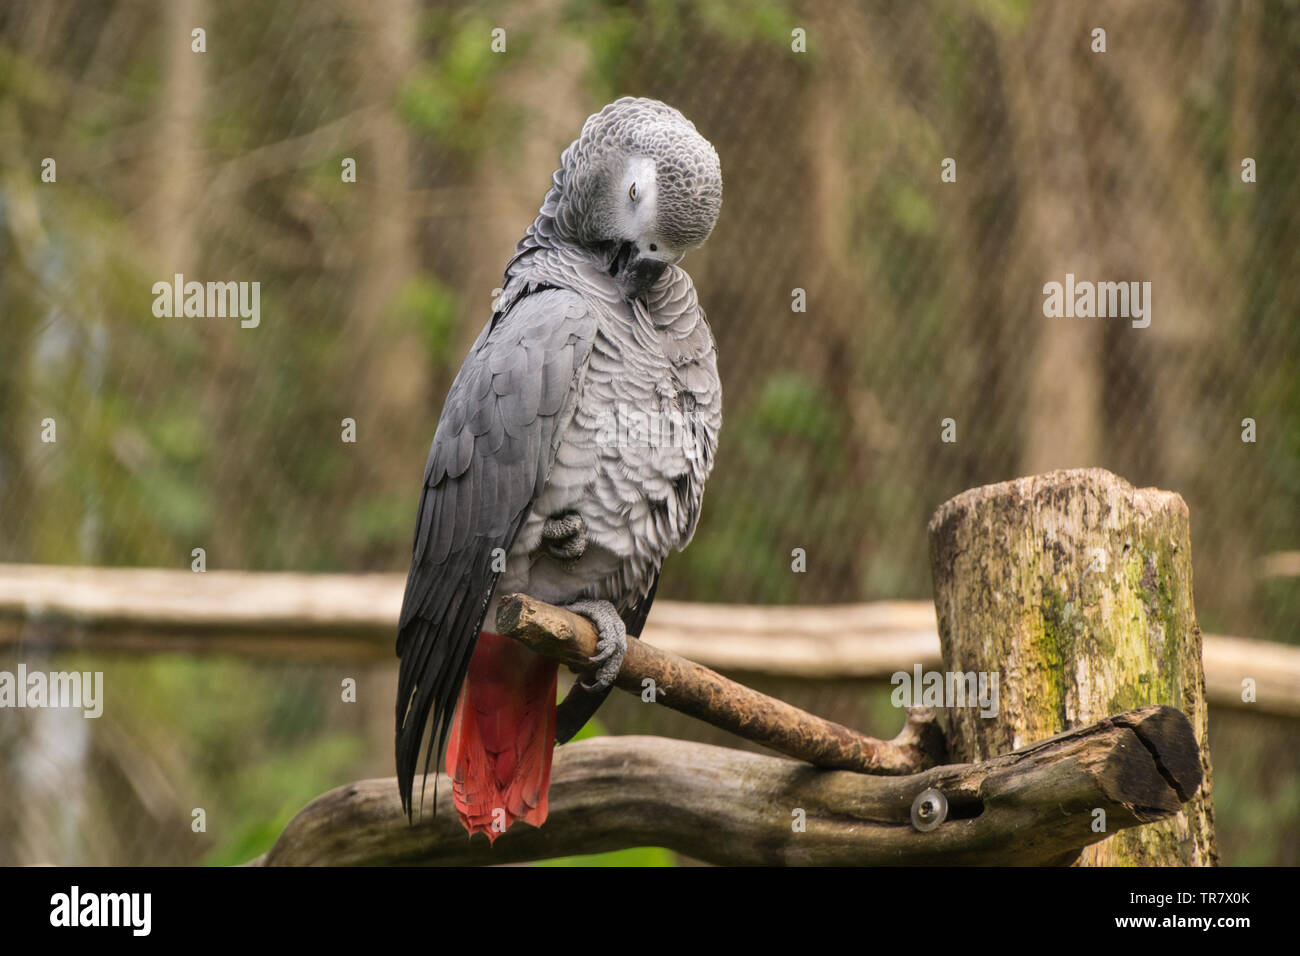 Psittacus è un genere di pappagalli africani nella sottofamiglia Psittacinae. Egli è stato fotografato presso lo zoo in Guadalupa. Foto Stock